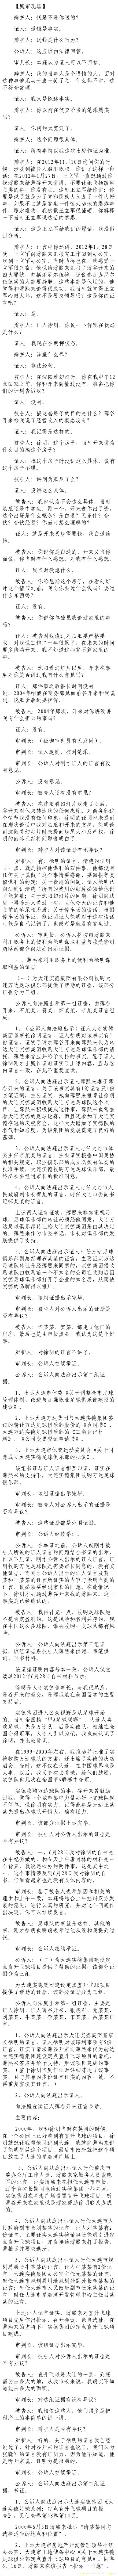 济南市中级法院官方微博公布的8月22日庭审现场记录（9）